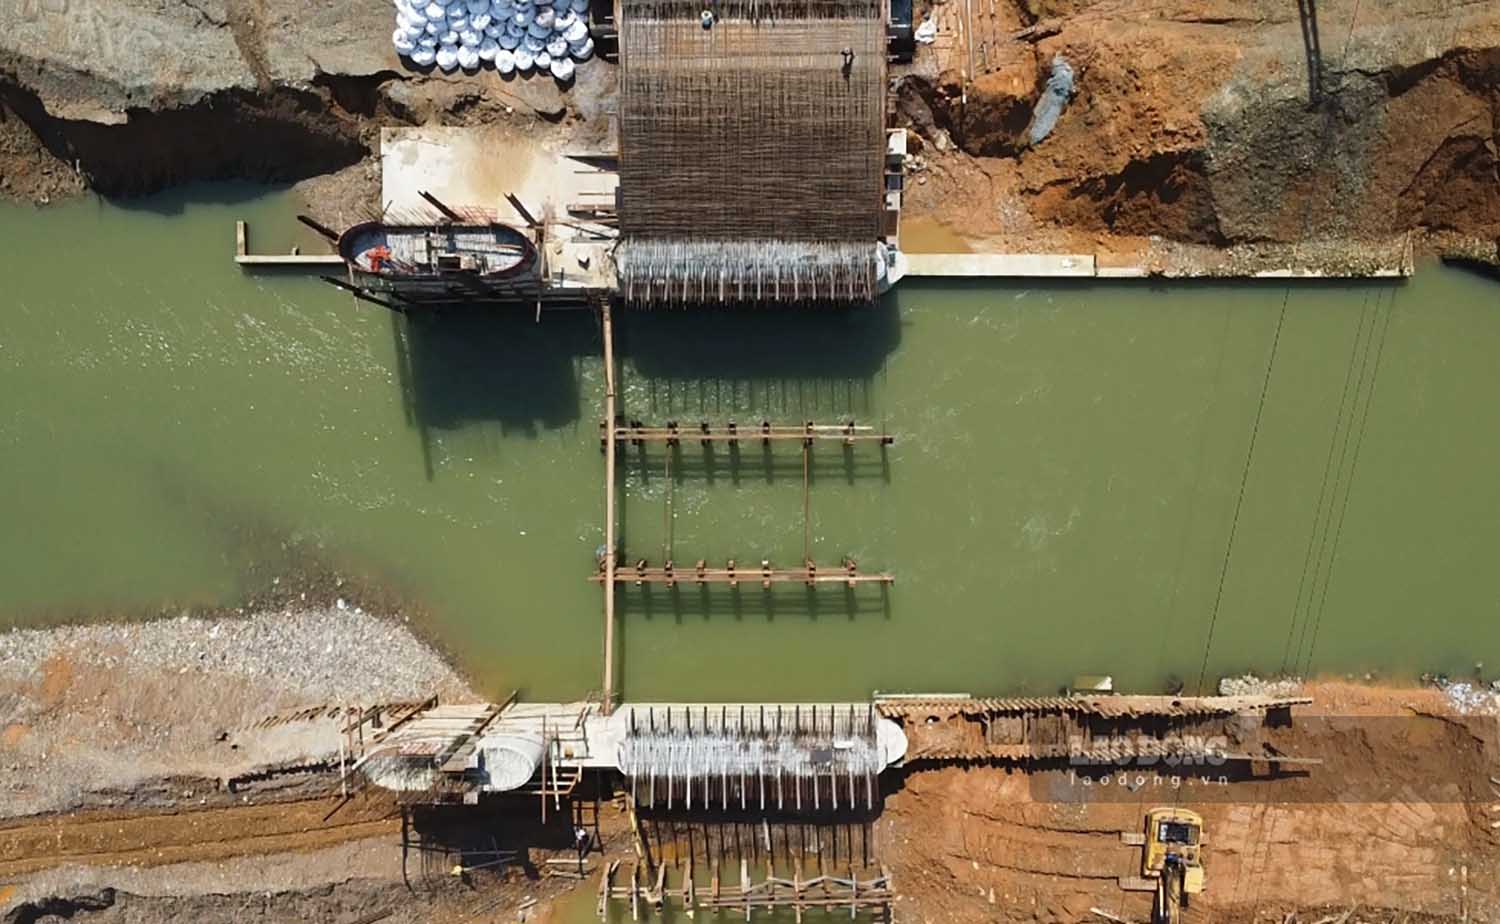 Công trình có chiều cao lớn nhất 17,5m, dâng nước sông Lô tại vị trí đập lên 6m. Việc điều tiết mực nước được thực hiện với 3 cửa xả cùng thiết bị nâng, hạ đập bằng hệ thống xy-lanh thủy lực.